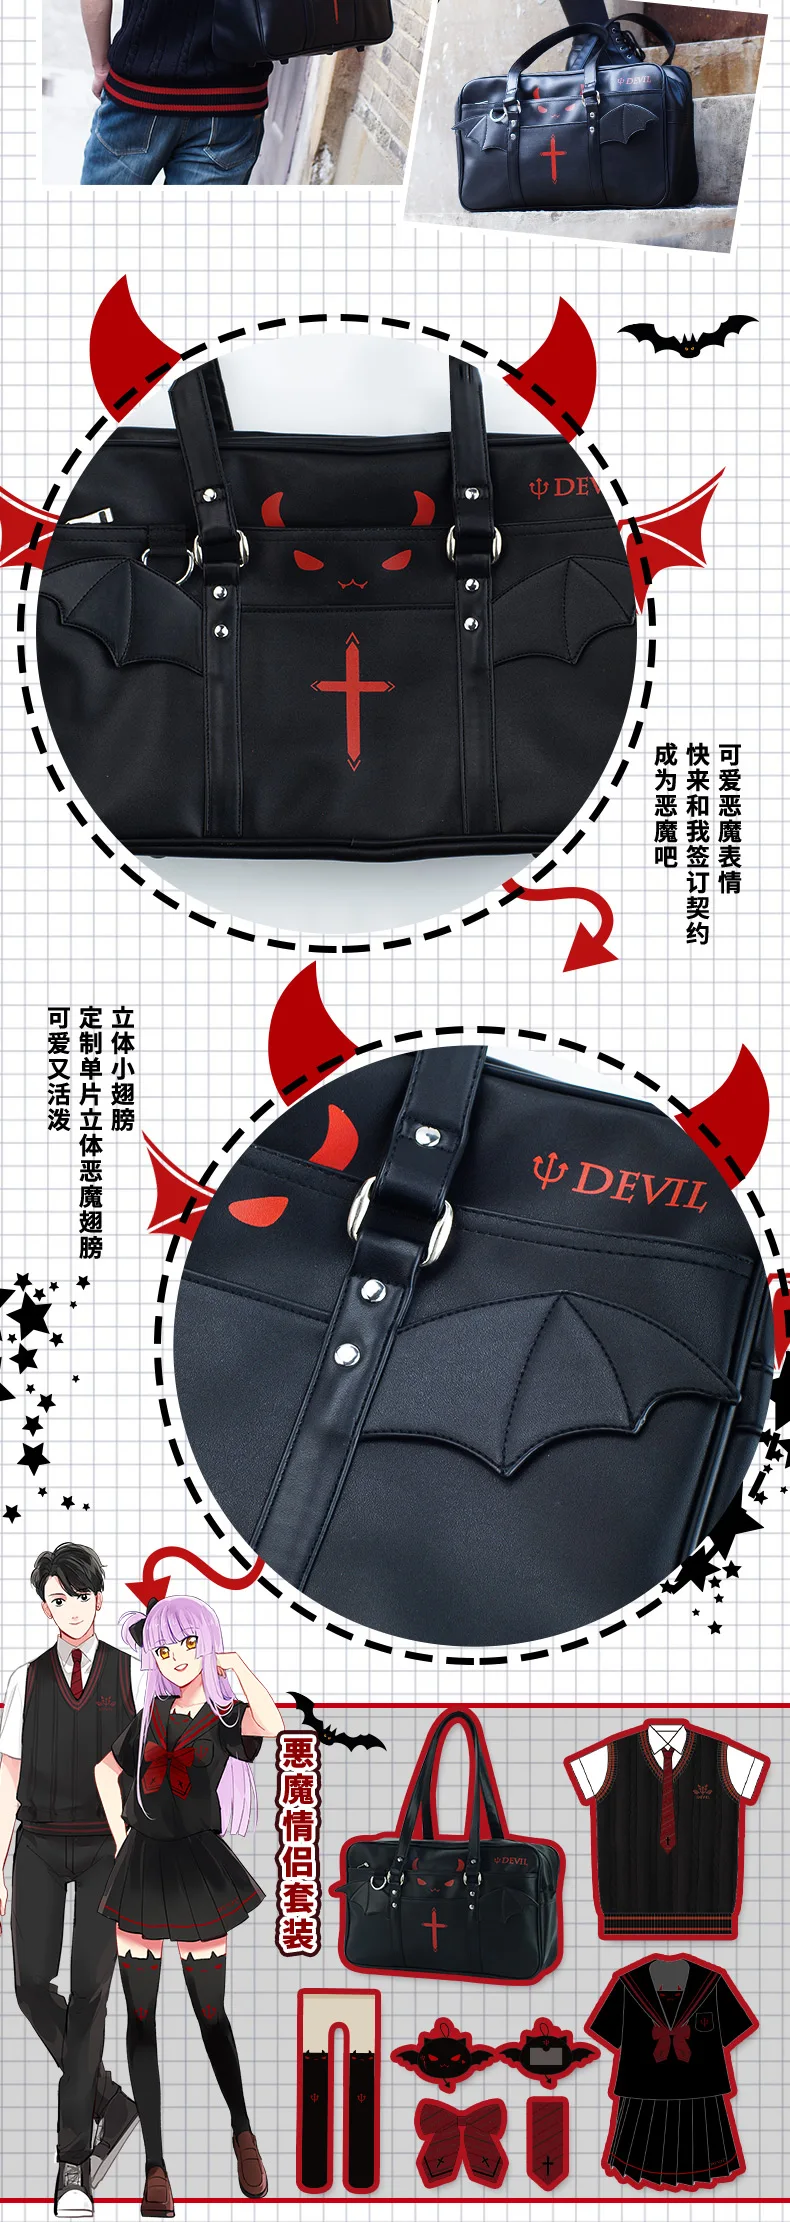 Details about   Little Devil Bag Handbag Japan Harajuku Lolita Casual Shoulder Bag Schoolbag pu 